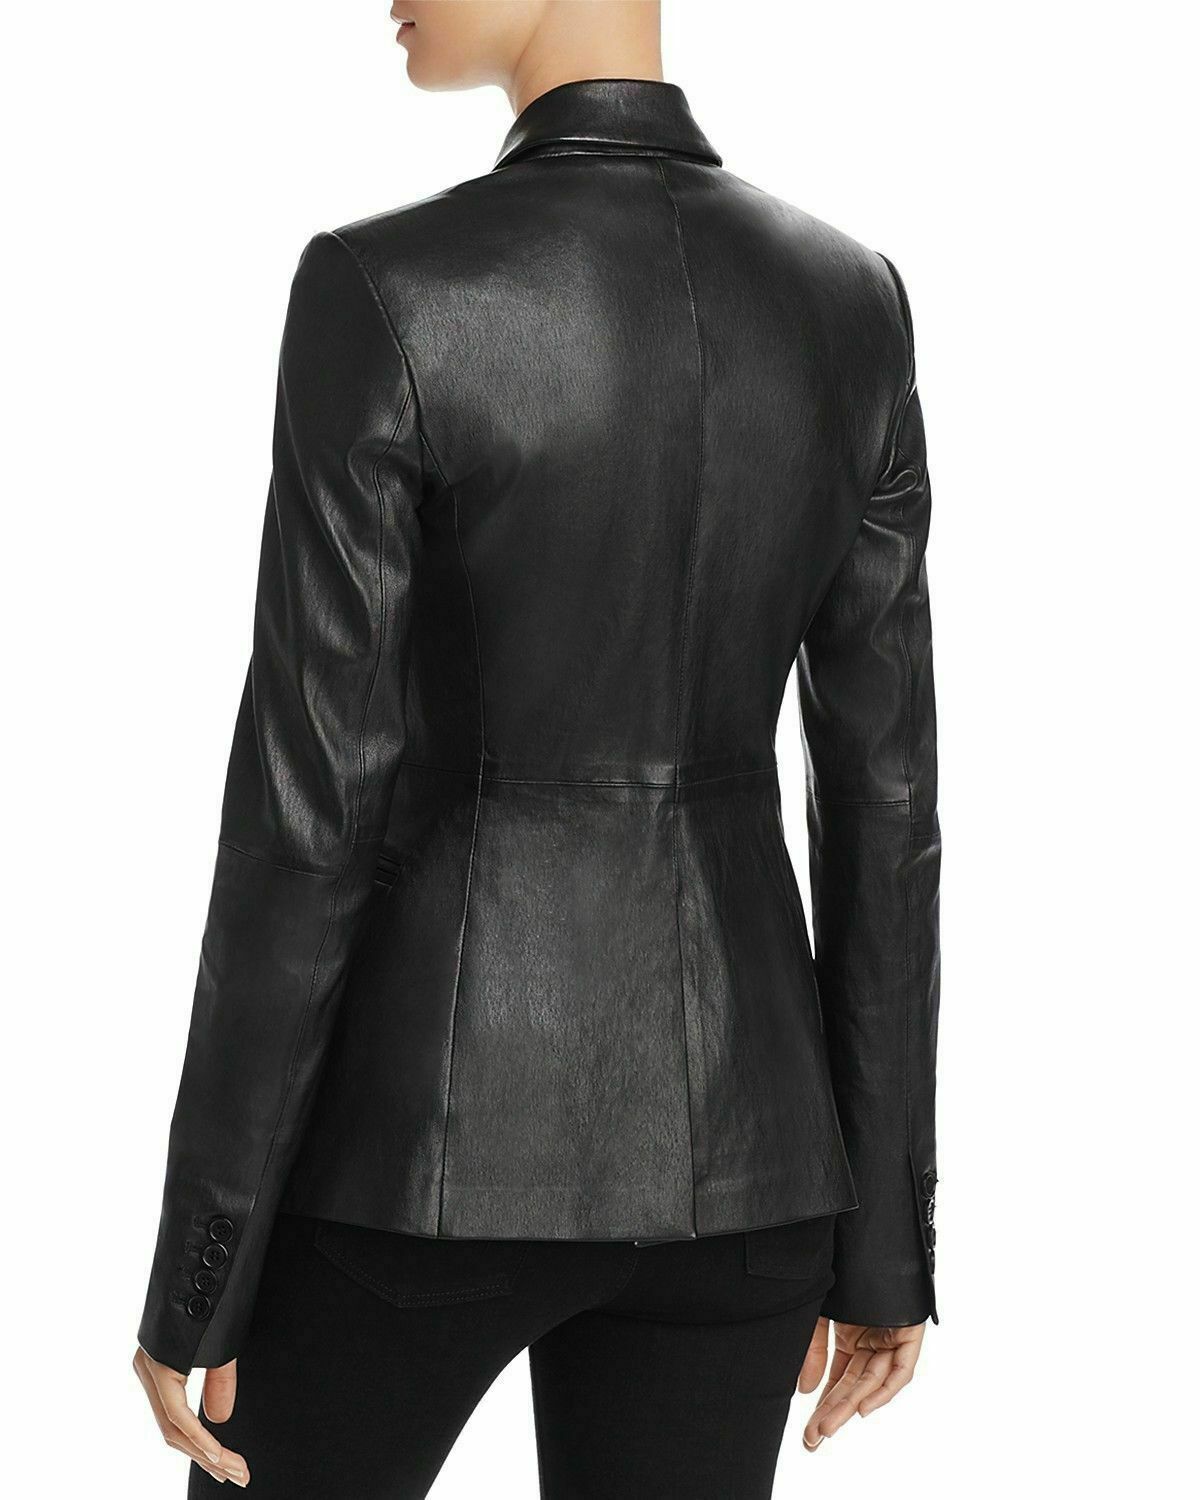 Womens Black Leather Blazer Genuine Lambskin Size XS S M L XL XXL ...